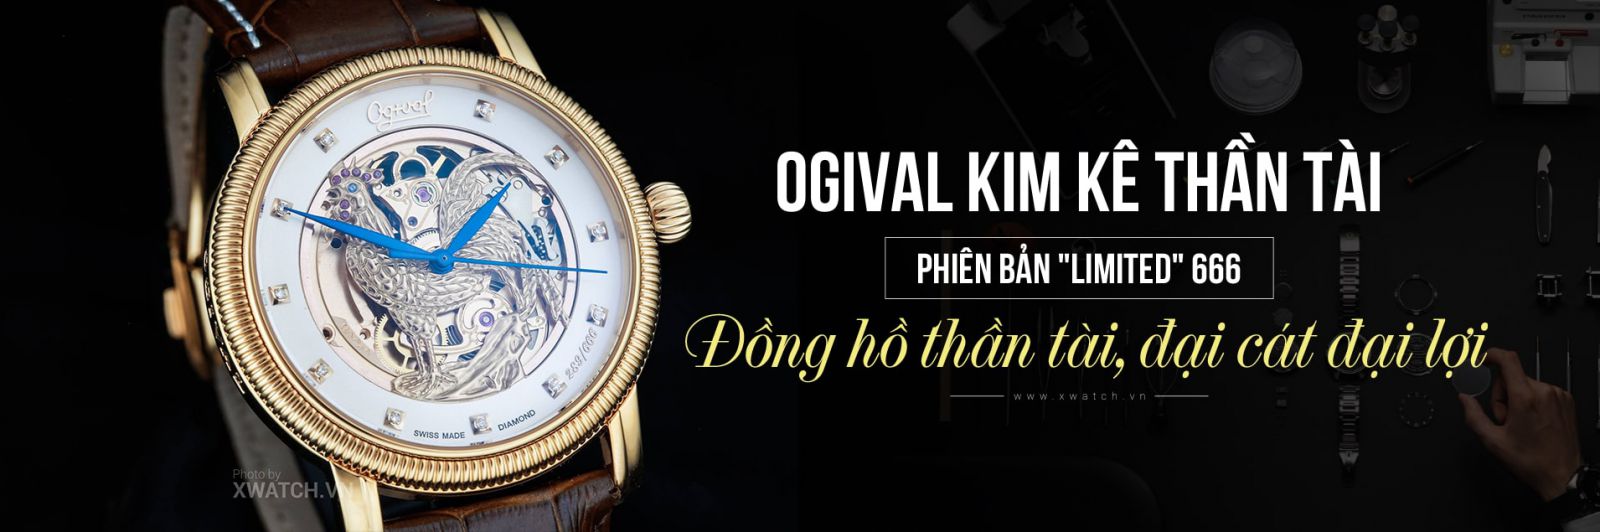 Đồng hồ Ogival OG358.37AGR-GL